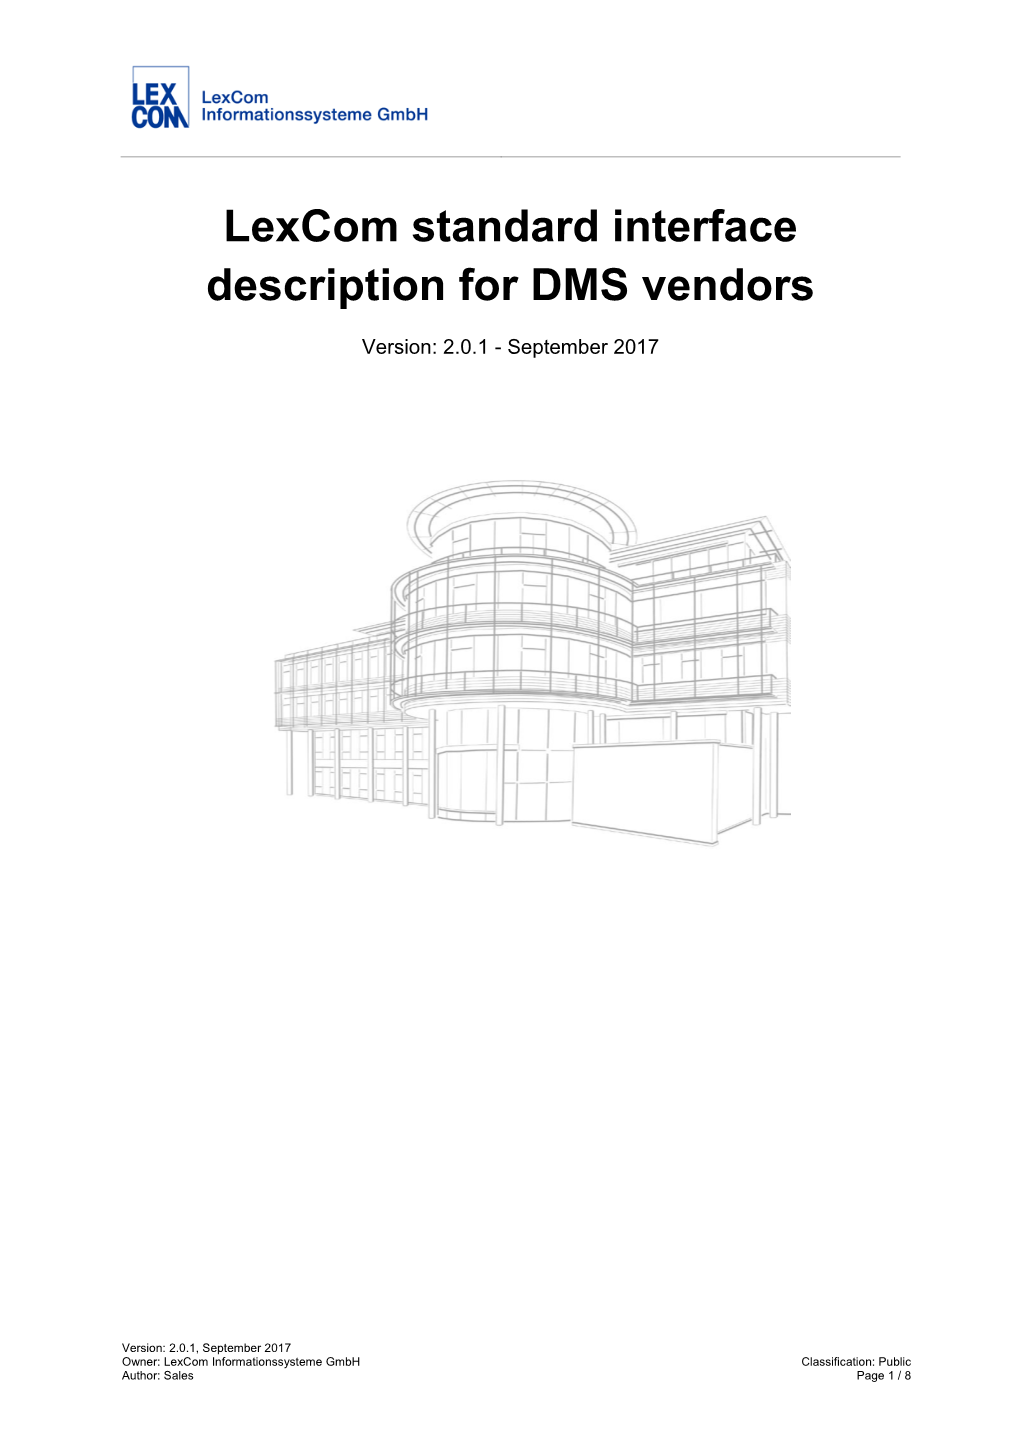 Lexcom Standard Interface Description for DMS Vendors